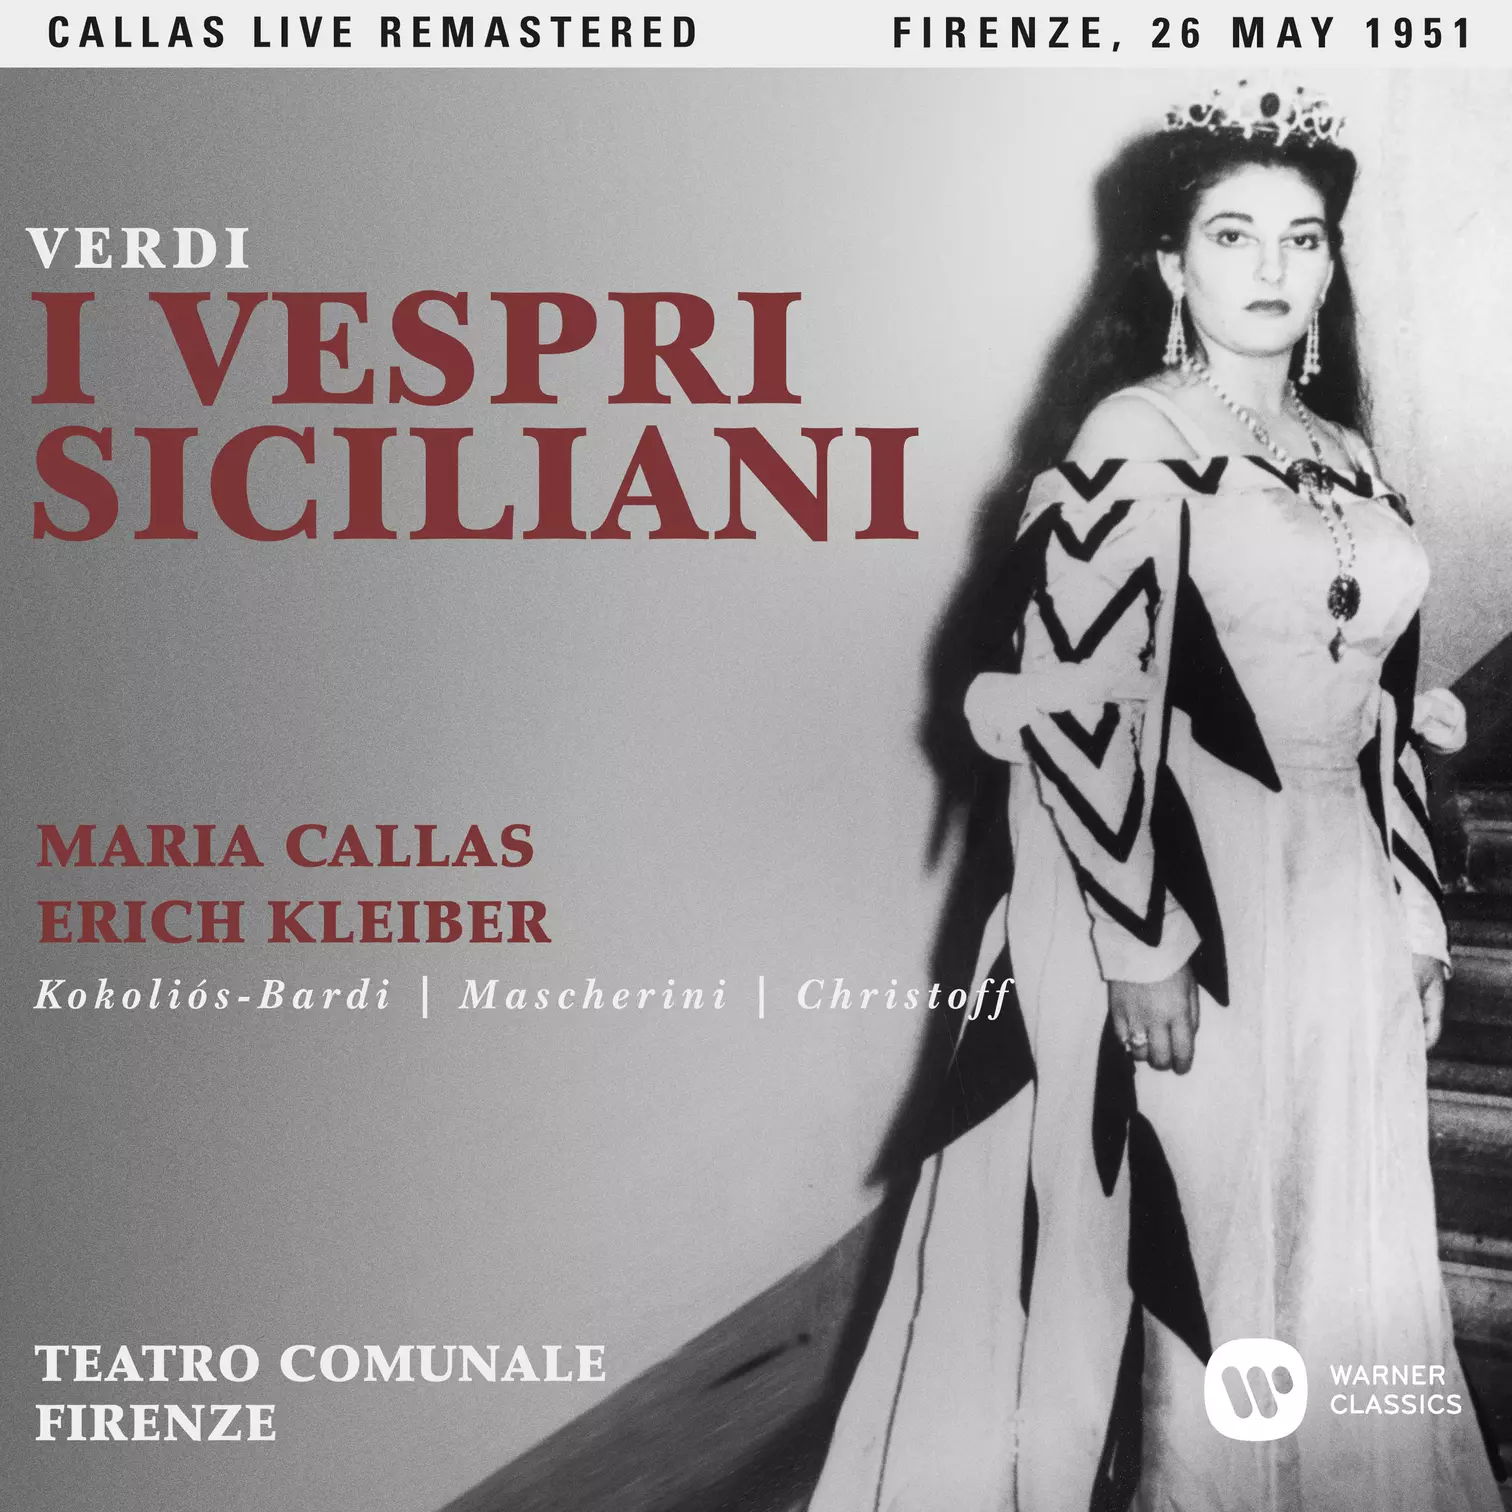 Verdi:  I vespri siciliani (1951 - Florence) - Callas Live Remastered